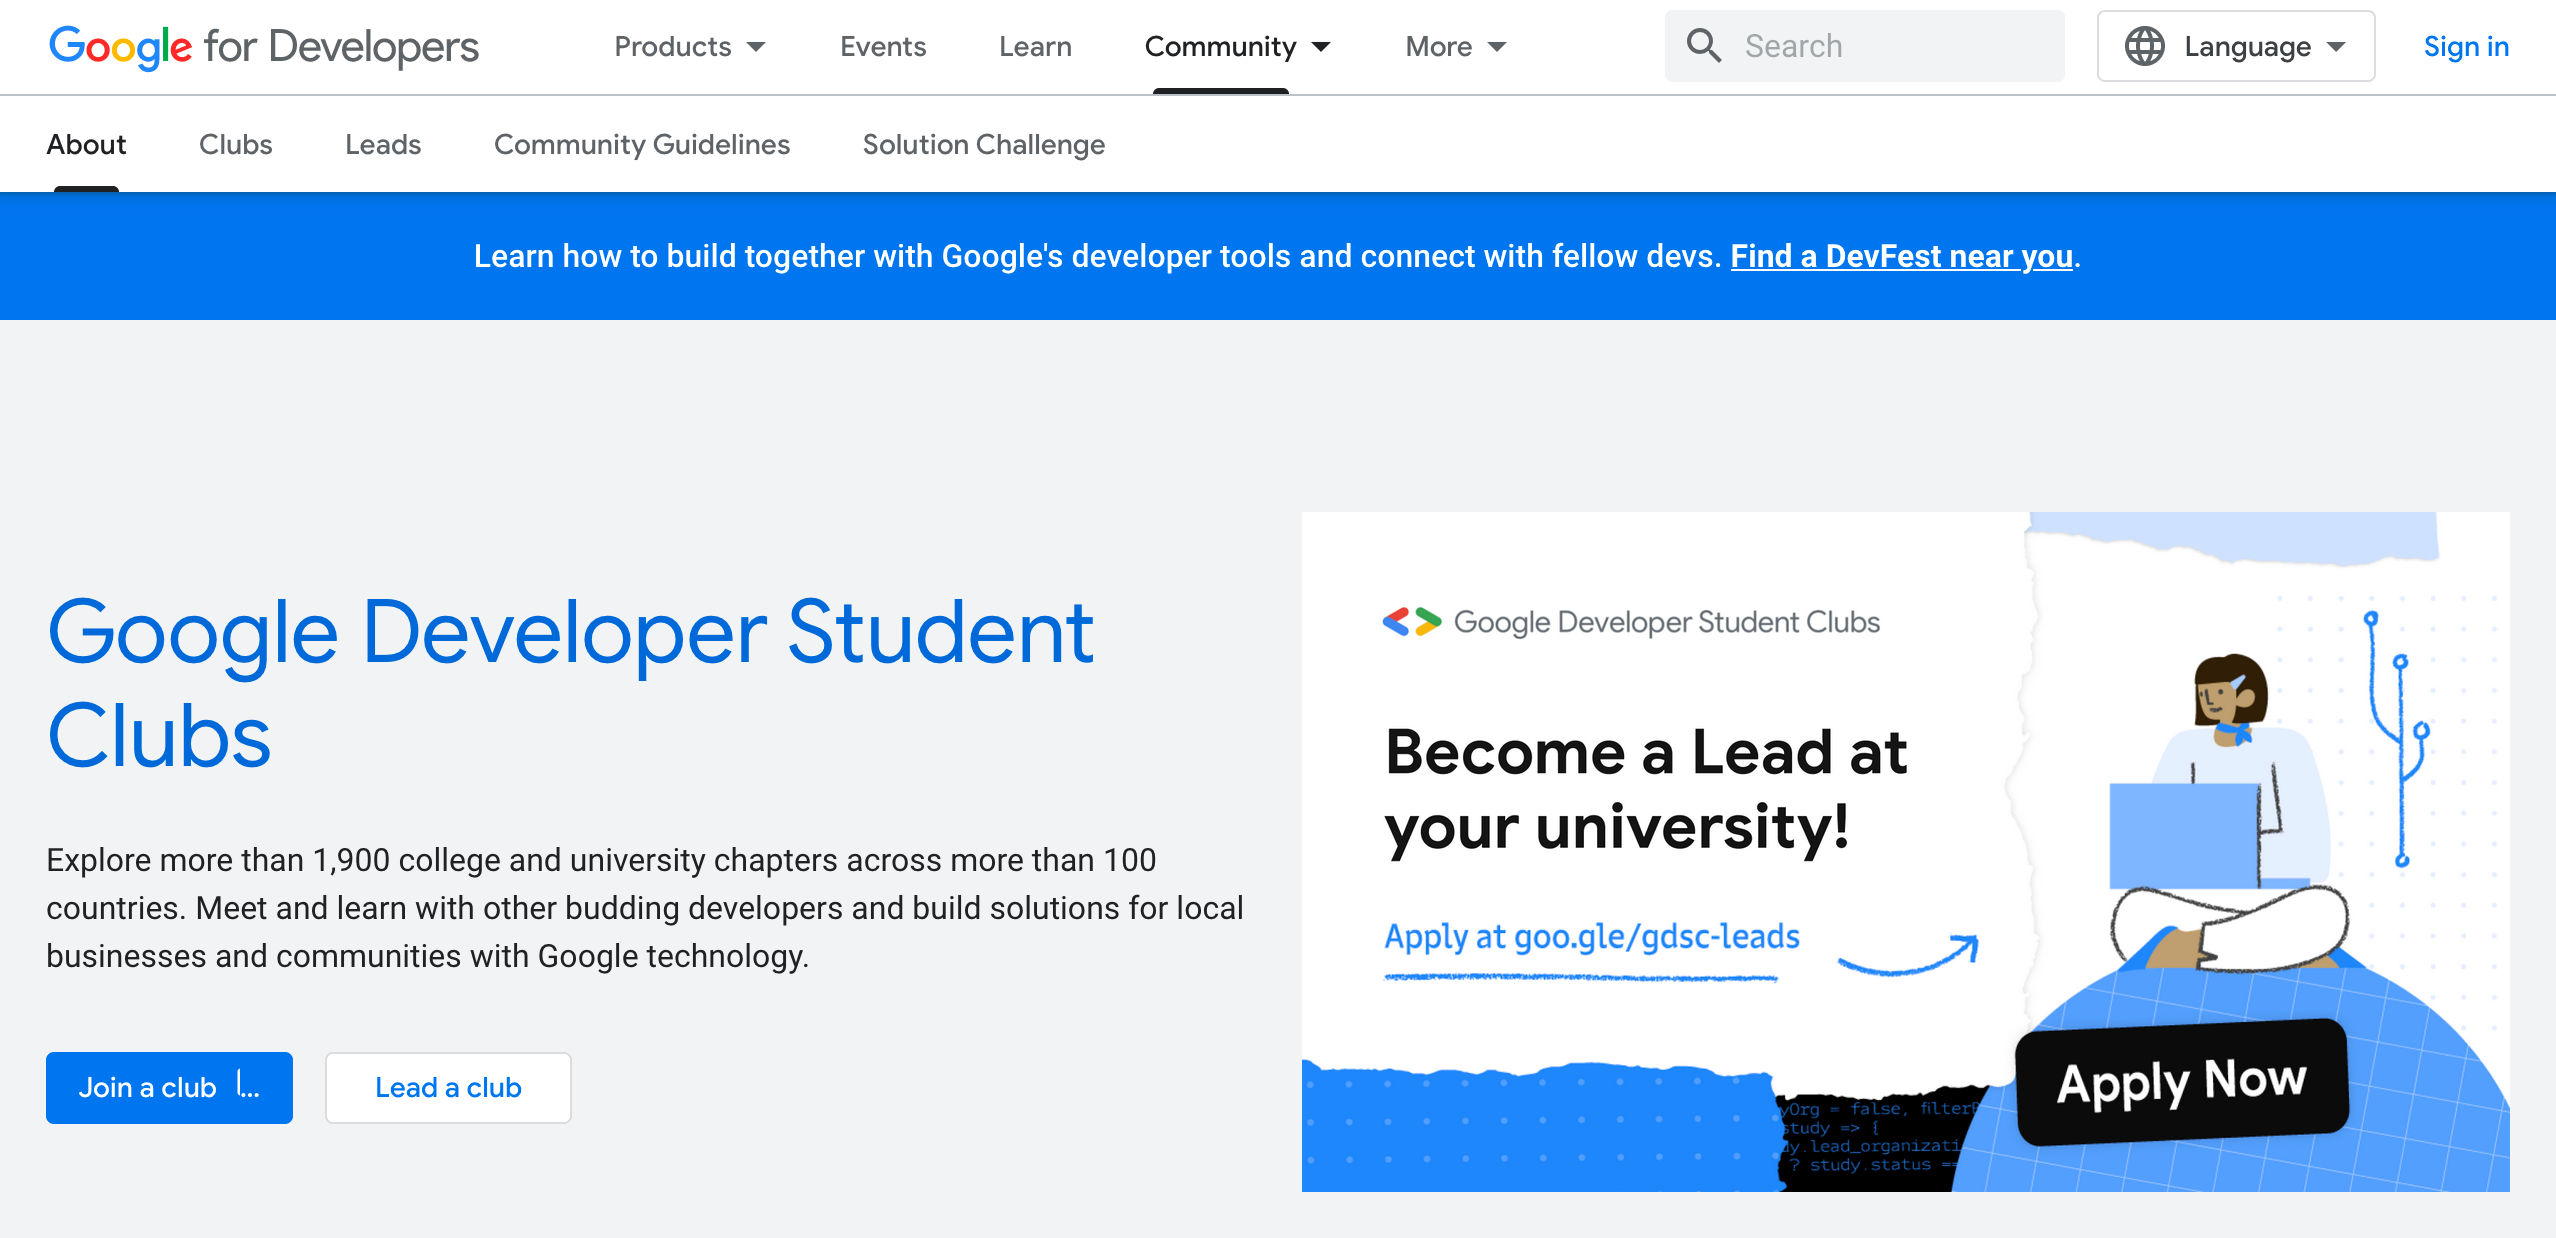 Il sito web della community Google Developer Student Clubs